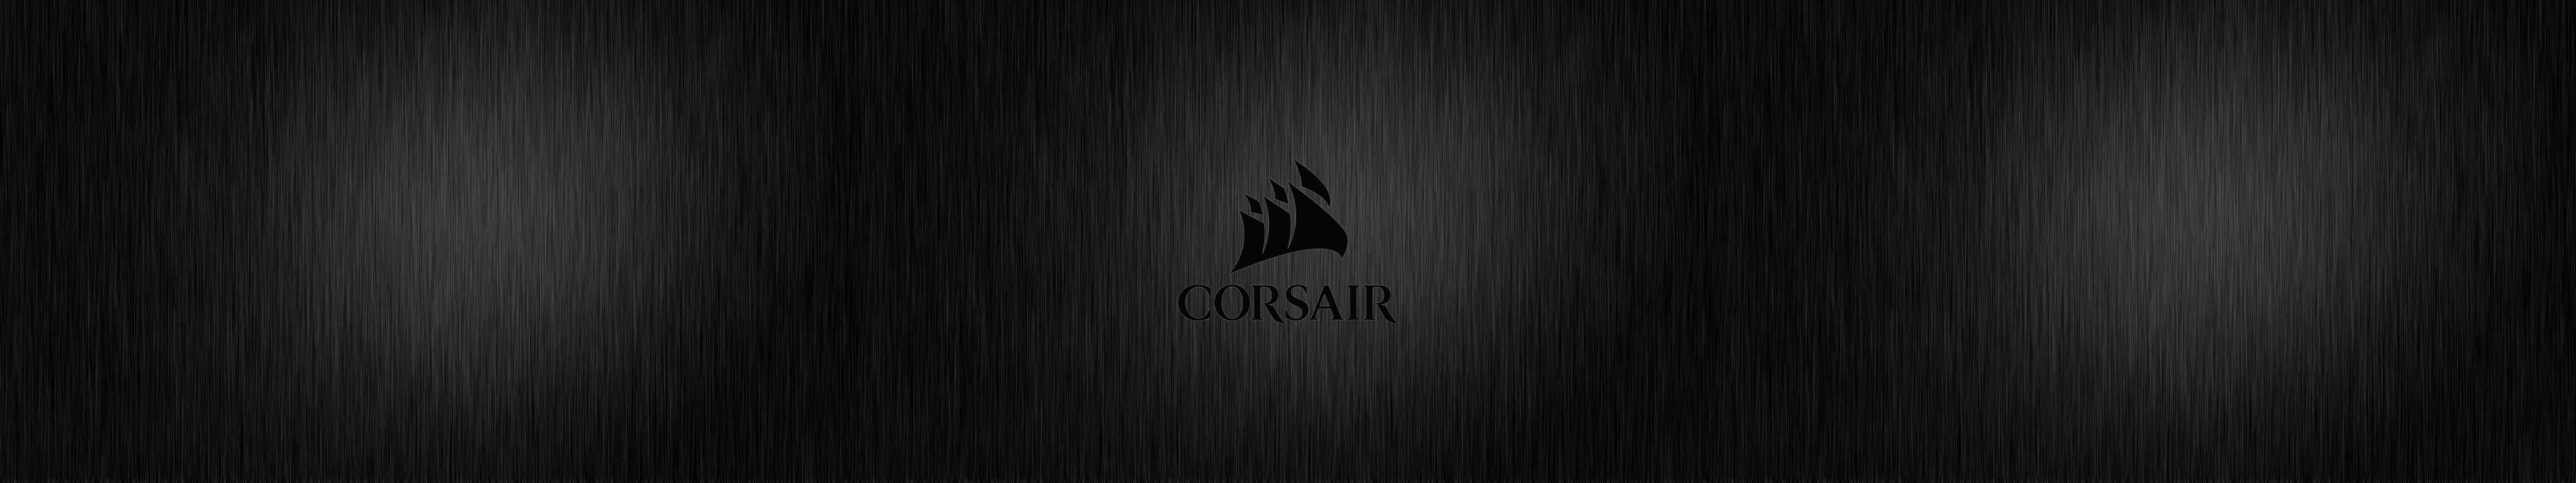 Högeffektivaspel Med Corsair